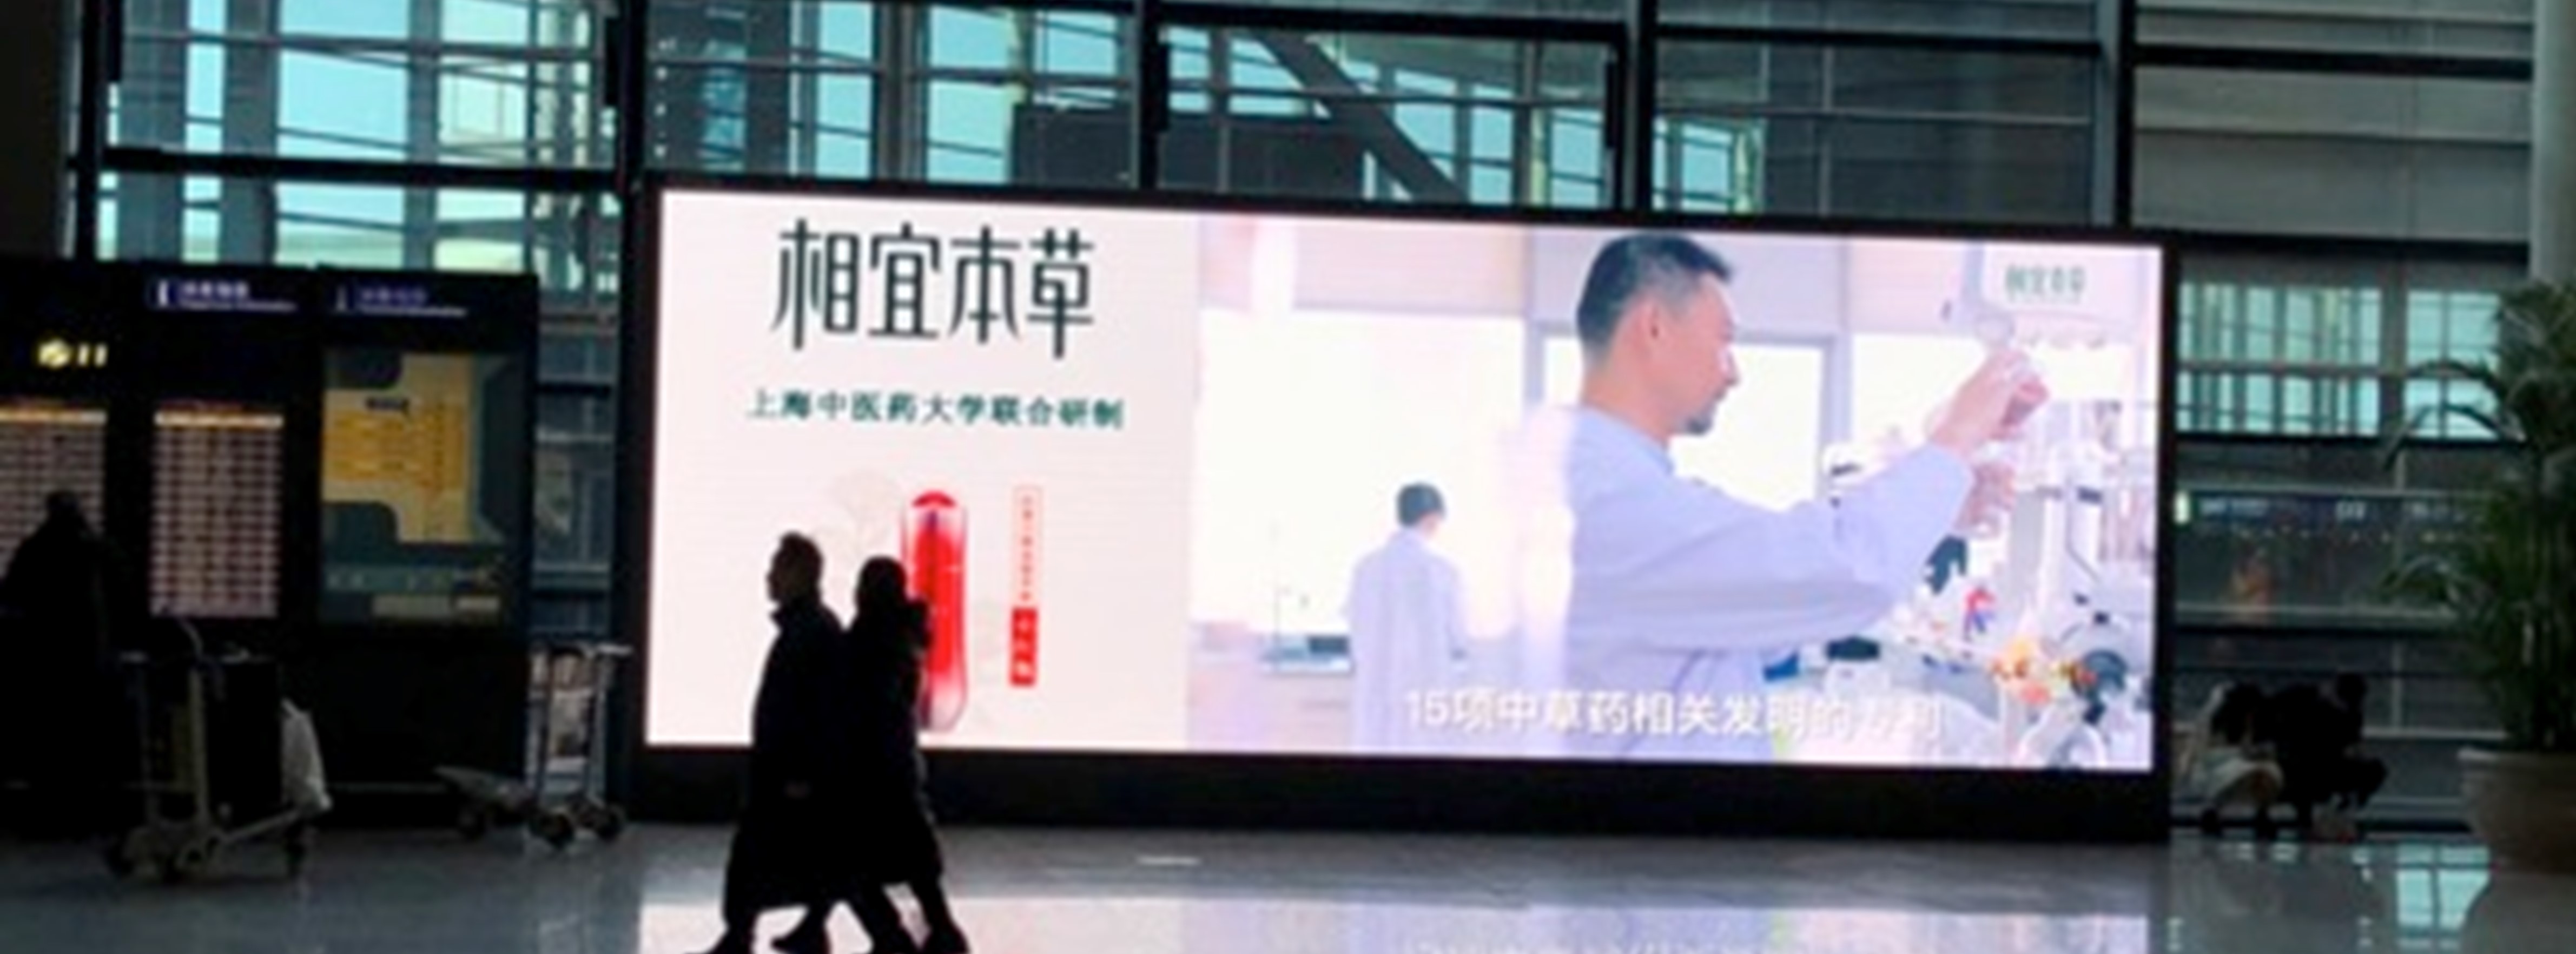 上海机场广告-虹桥T2交通枢纽区LED屏